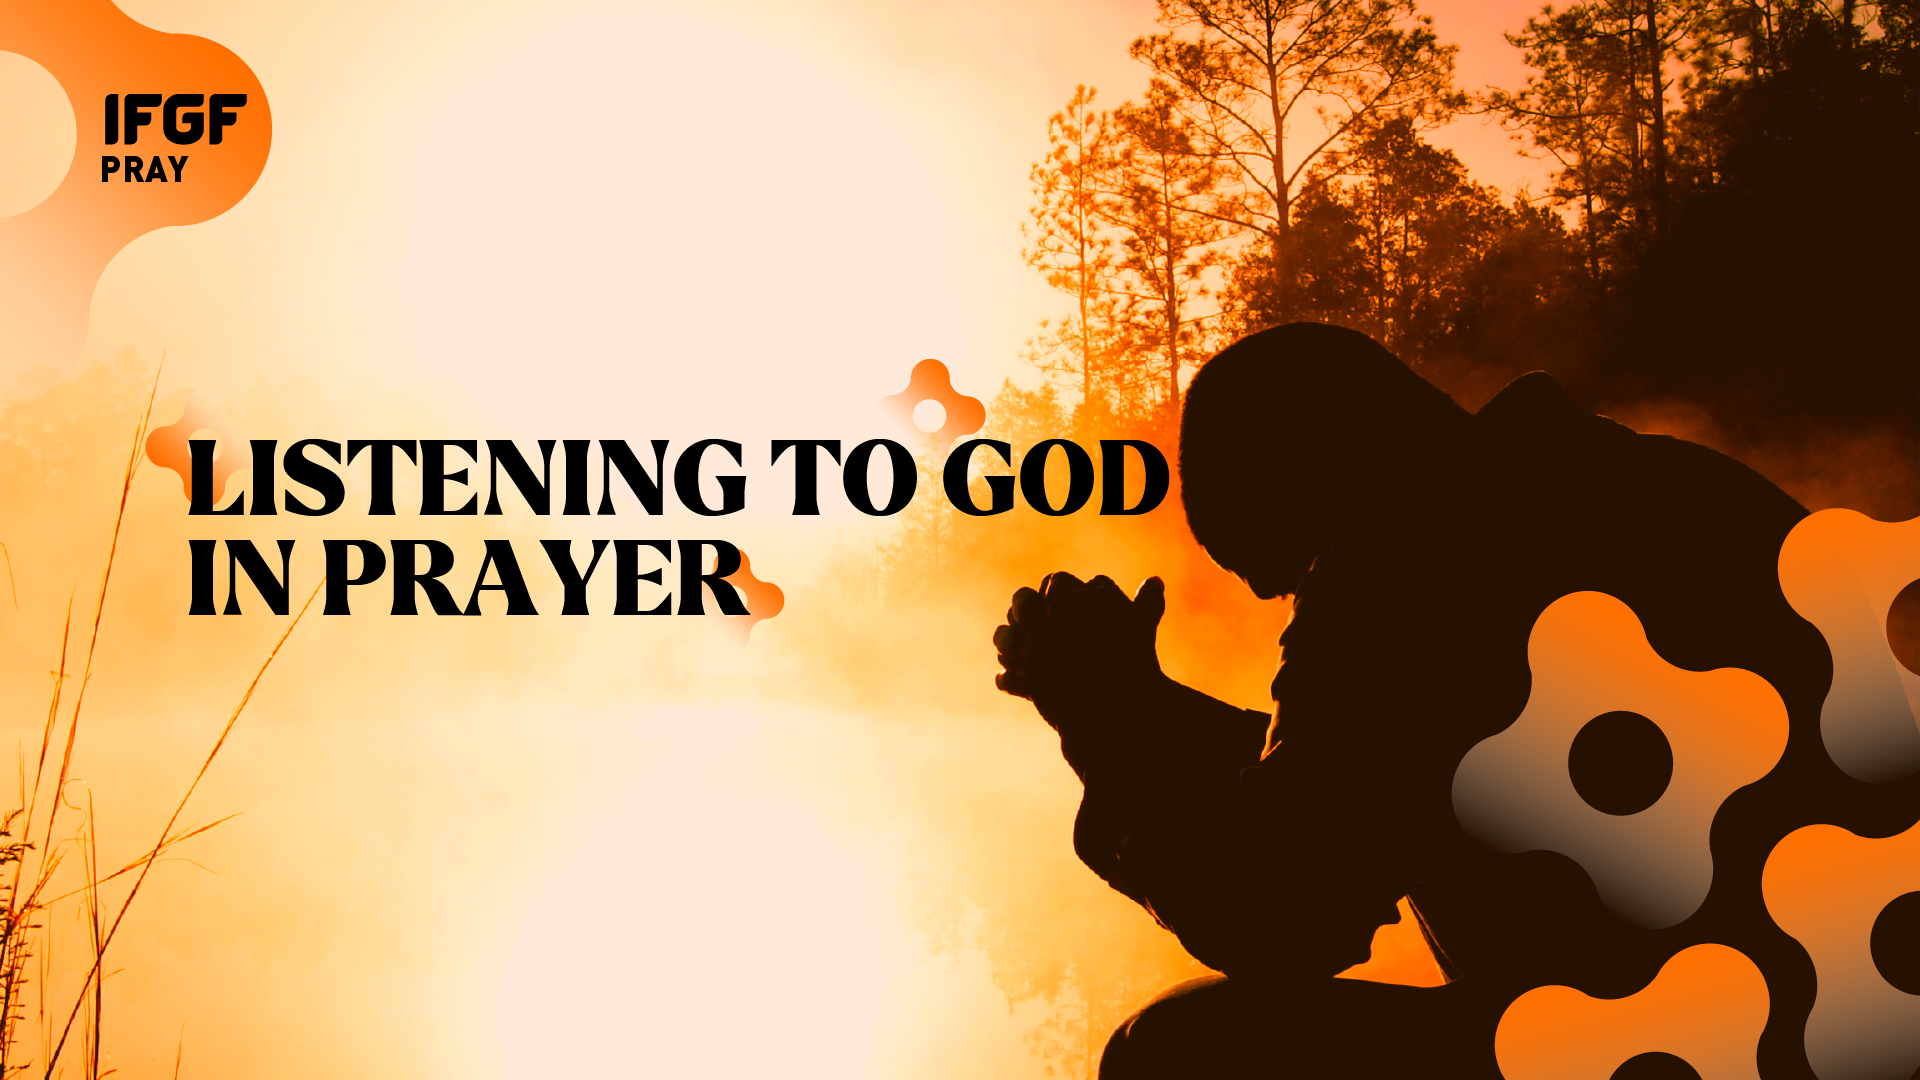 Listening to God in prayer